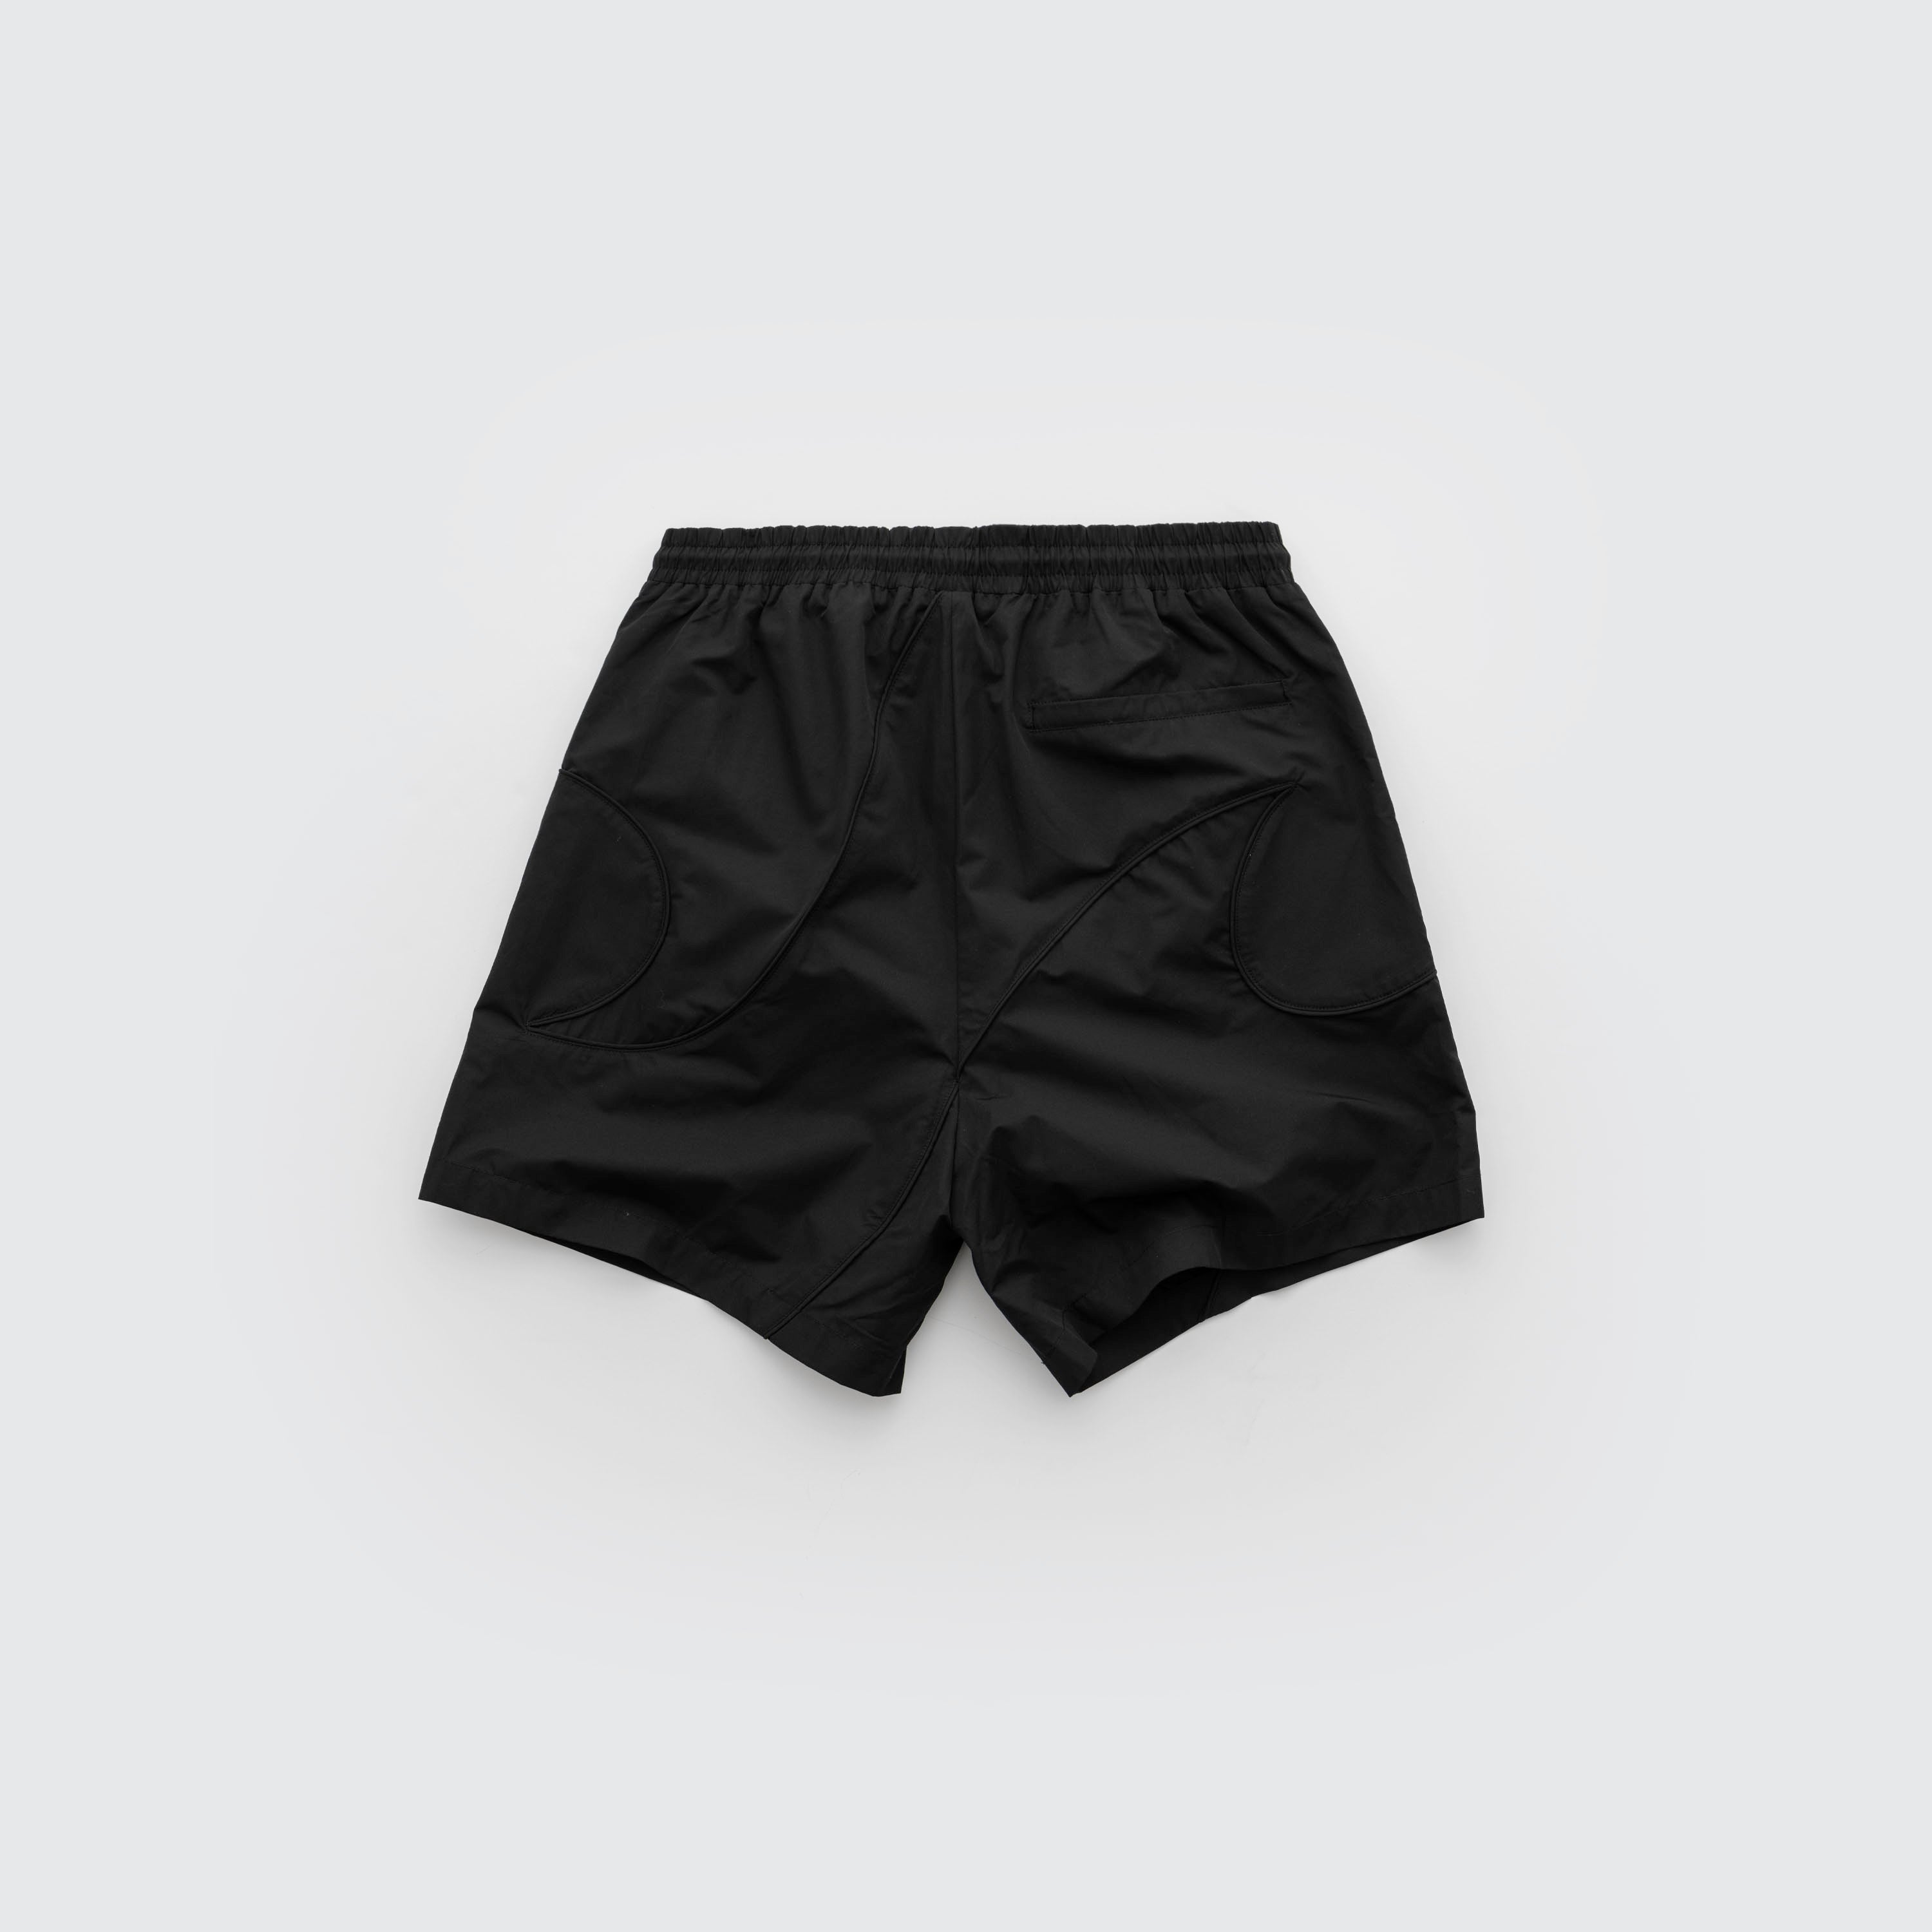 Black "Linear" Premium Nylon Shorts